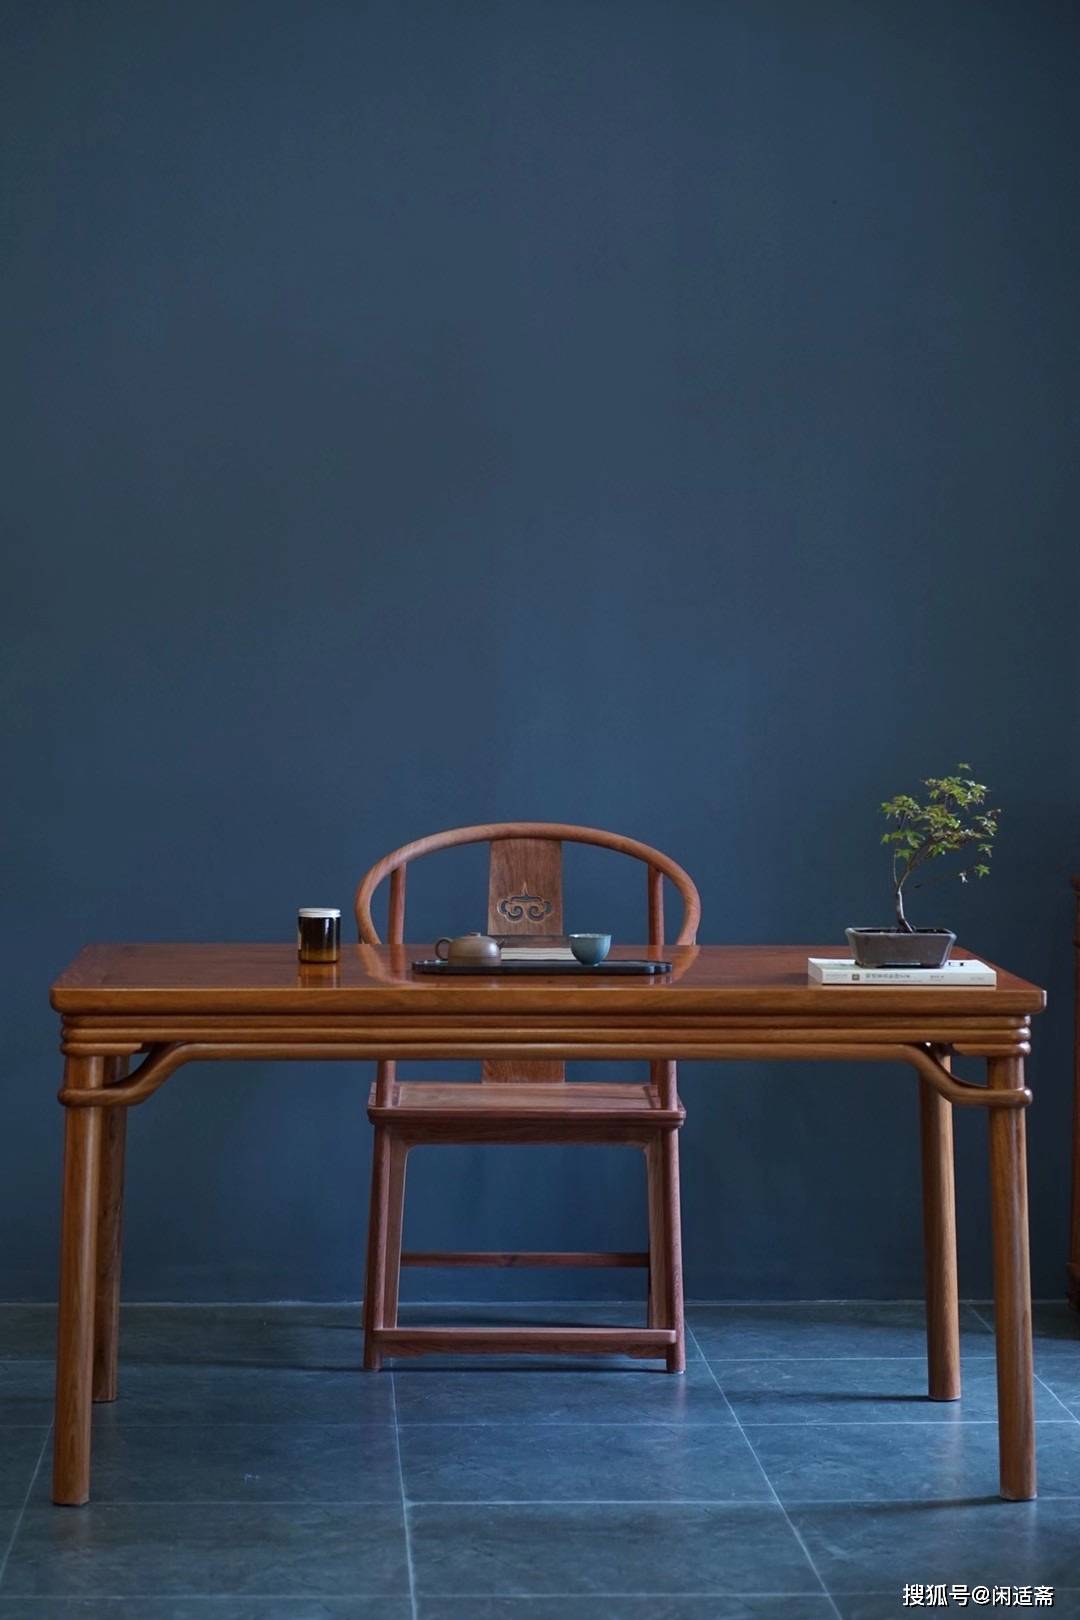 古法工艺双泥面裹腿罗锅枨茶桌明式家具上品之作